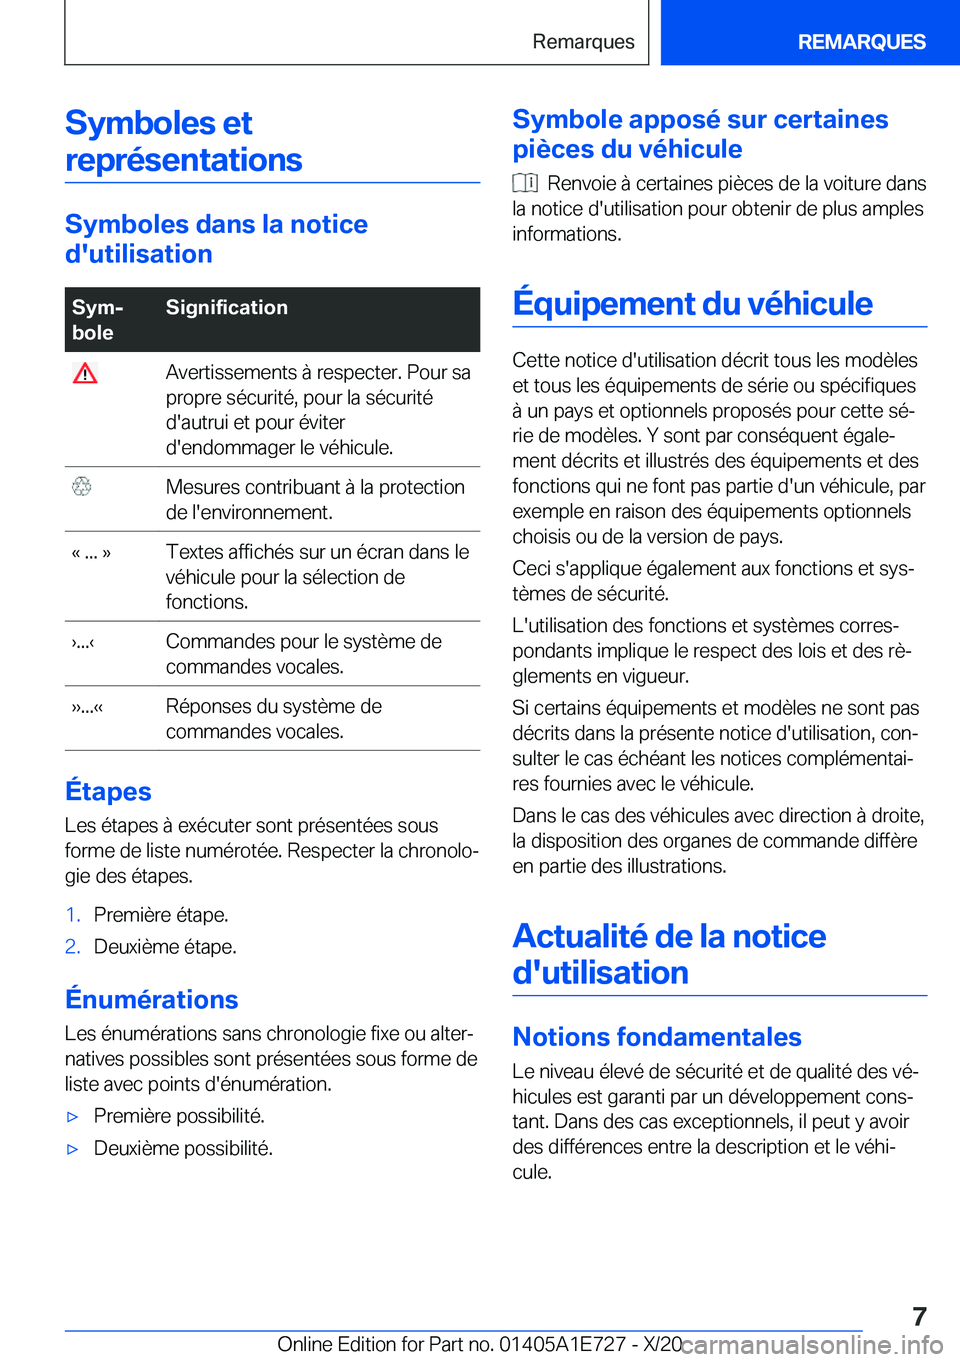 BMW X2 2021  Notices Demploi (in French) �S�y�m�b�o�l�e�s��e�t�r�e�p�r�é�s�e�n�t�a�t�i�o�n�s
�S�y�m�b�o�l�e�s��d�a�n�s��l�a��n�o�t�i�c�e
�d�'�u�t�i�l�i�s�a�t�i�o�n
�S�y�mj
�b�o�l�e�S�i�g�n�i�f�i�c�a�t�i�o�n��A�v�e�r�t�i�s�s�e�m�e�